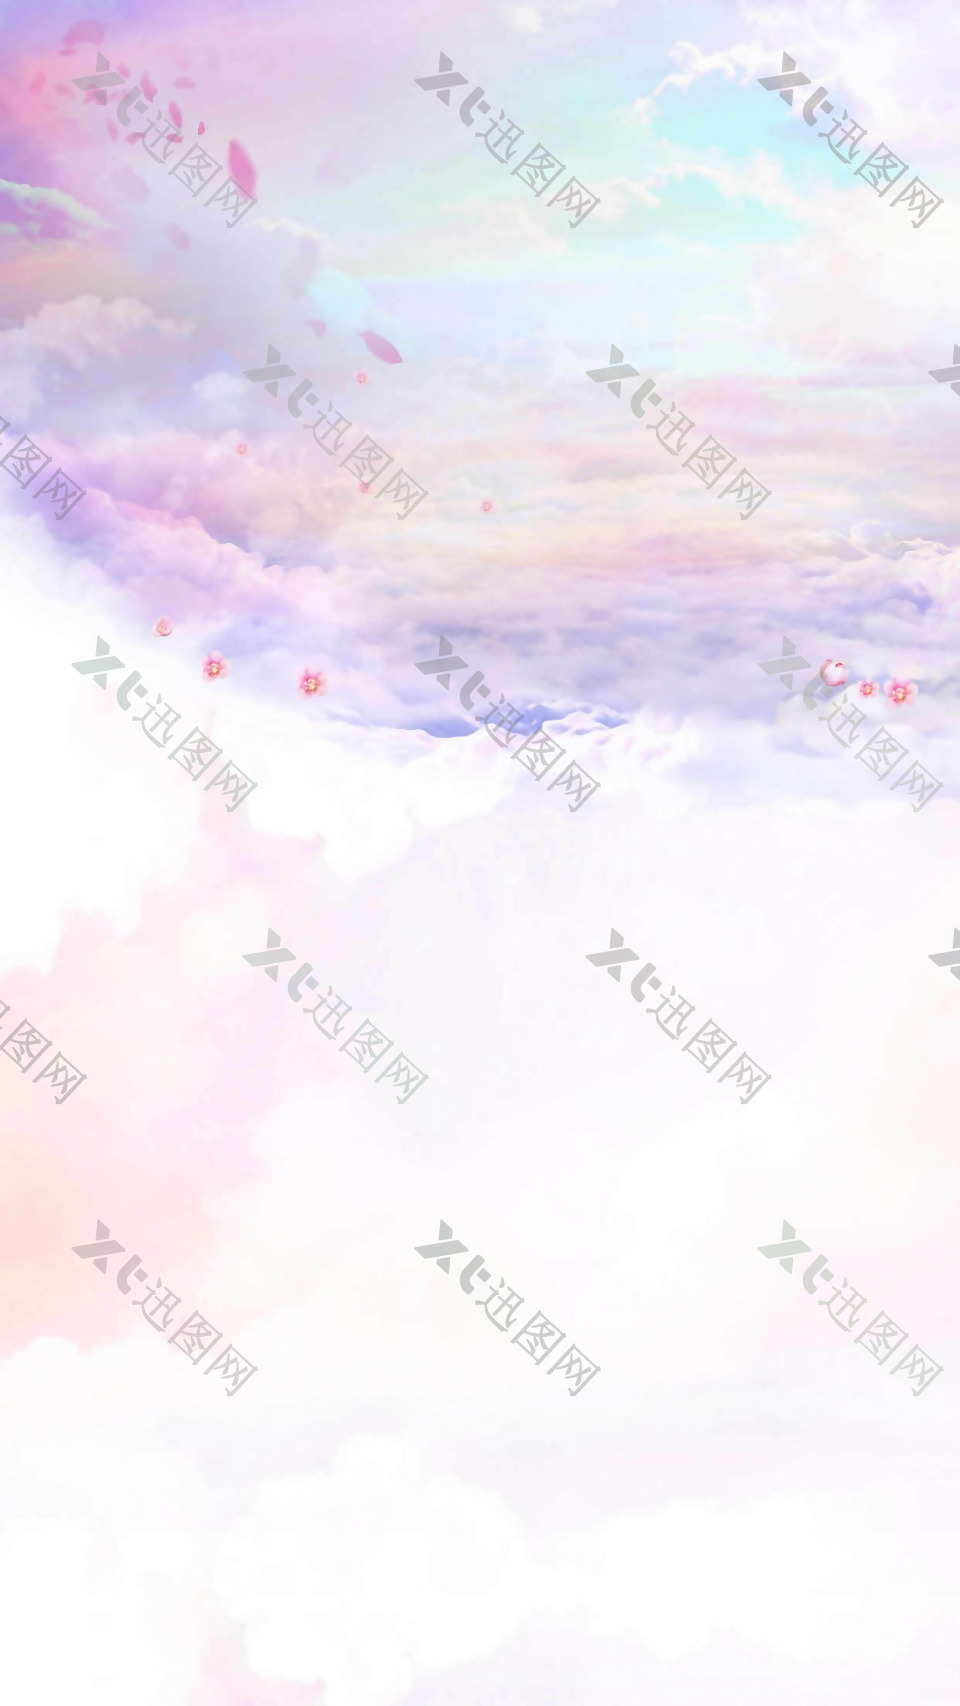 抽象彩色云朵H5背景素材